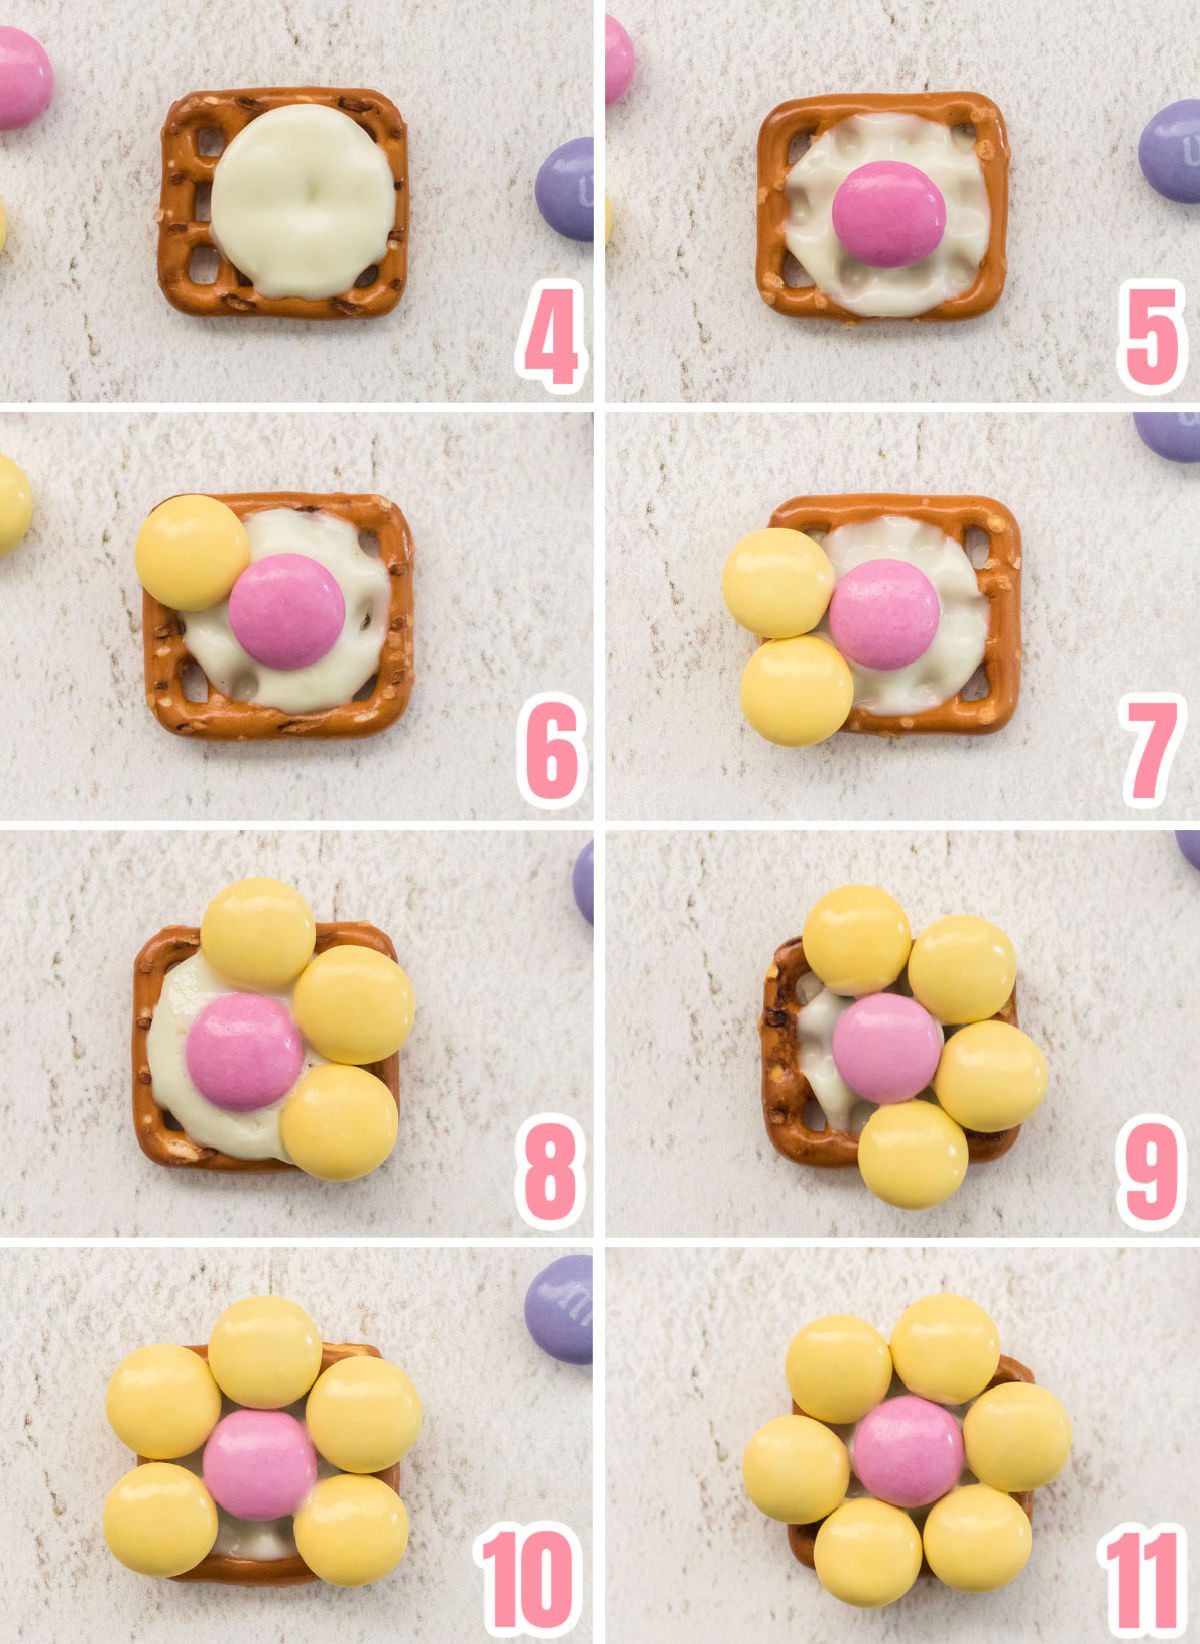  Immagine collage che mostra i passaggi necessari per premere i MM sui pretzel a forma di fiore.